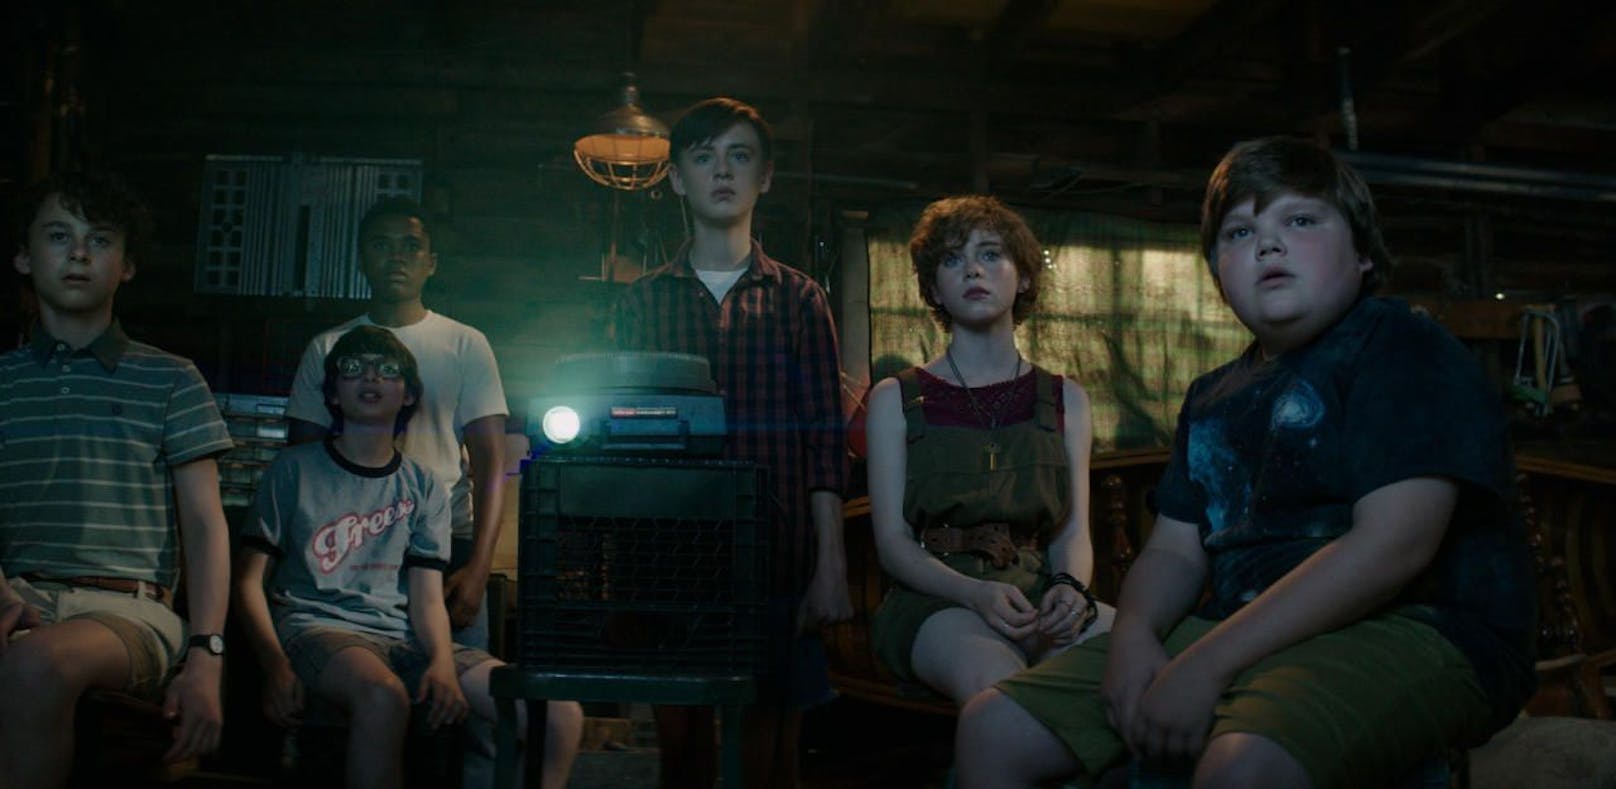 Neuer Teaser kündigt IT Trailer für Donnerstag an